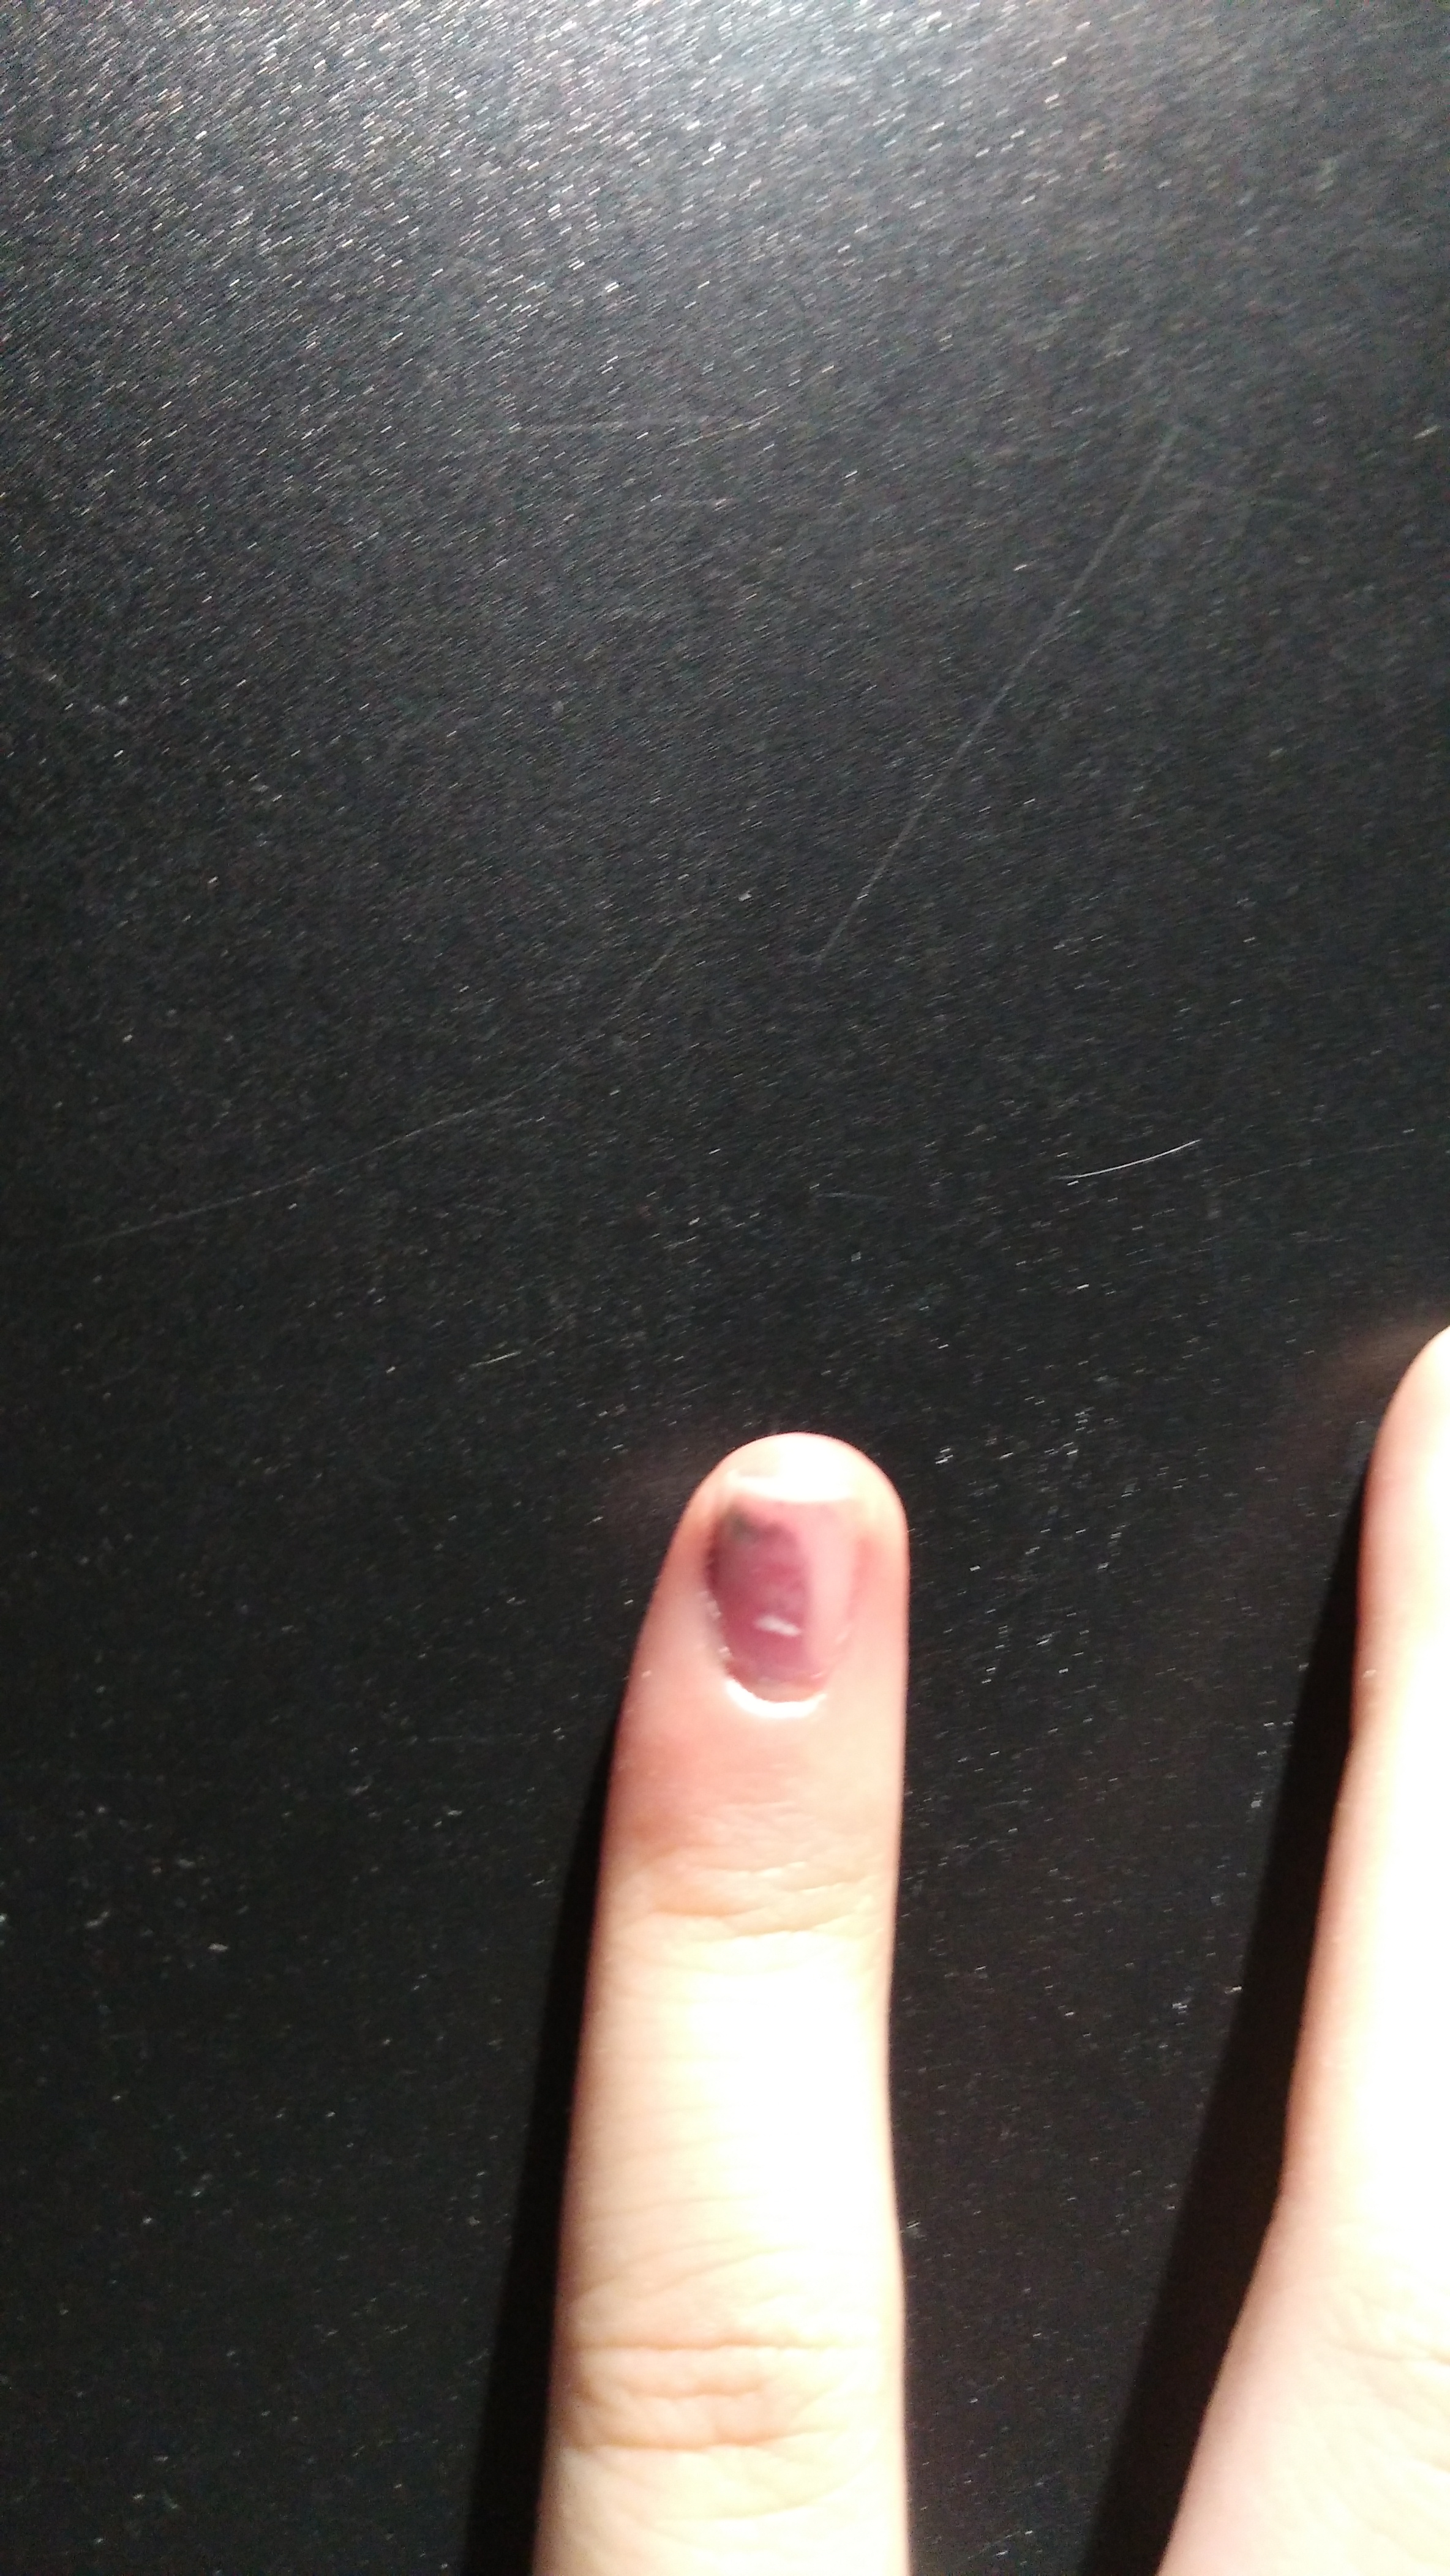 昨天晚上被车门挤了,淤血蔓延了小拇指指甲的一半,淤血最前端发